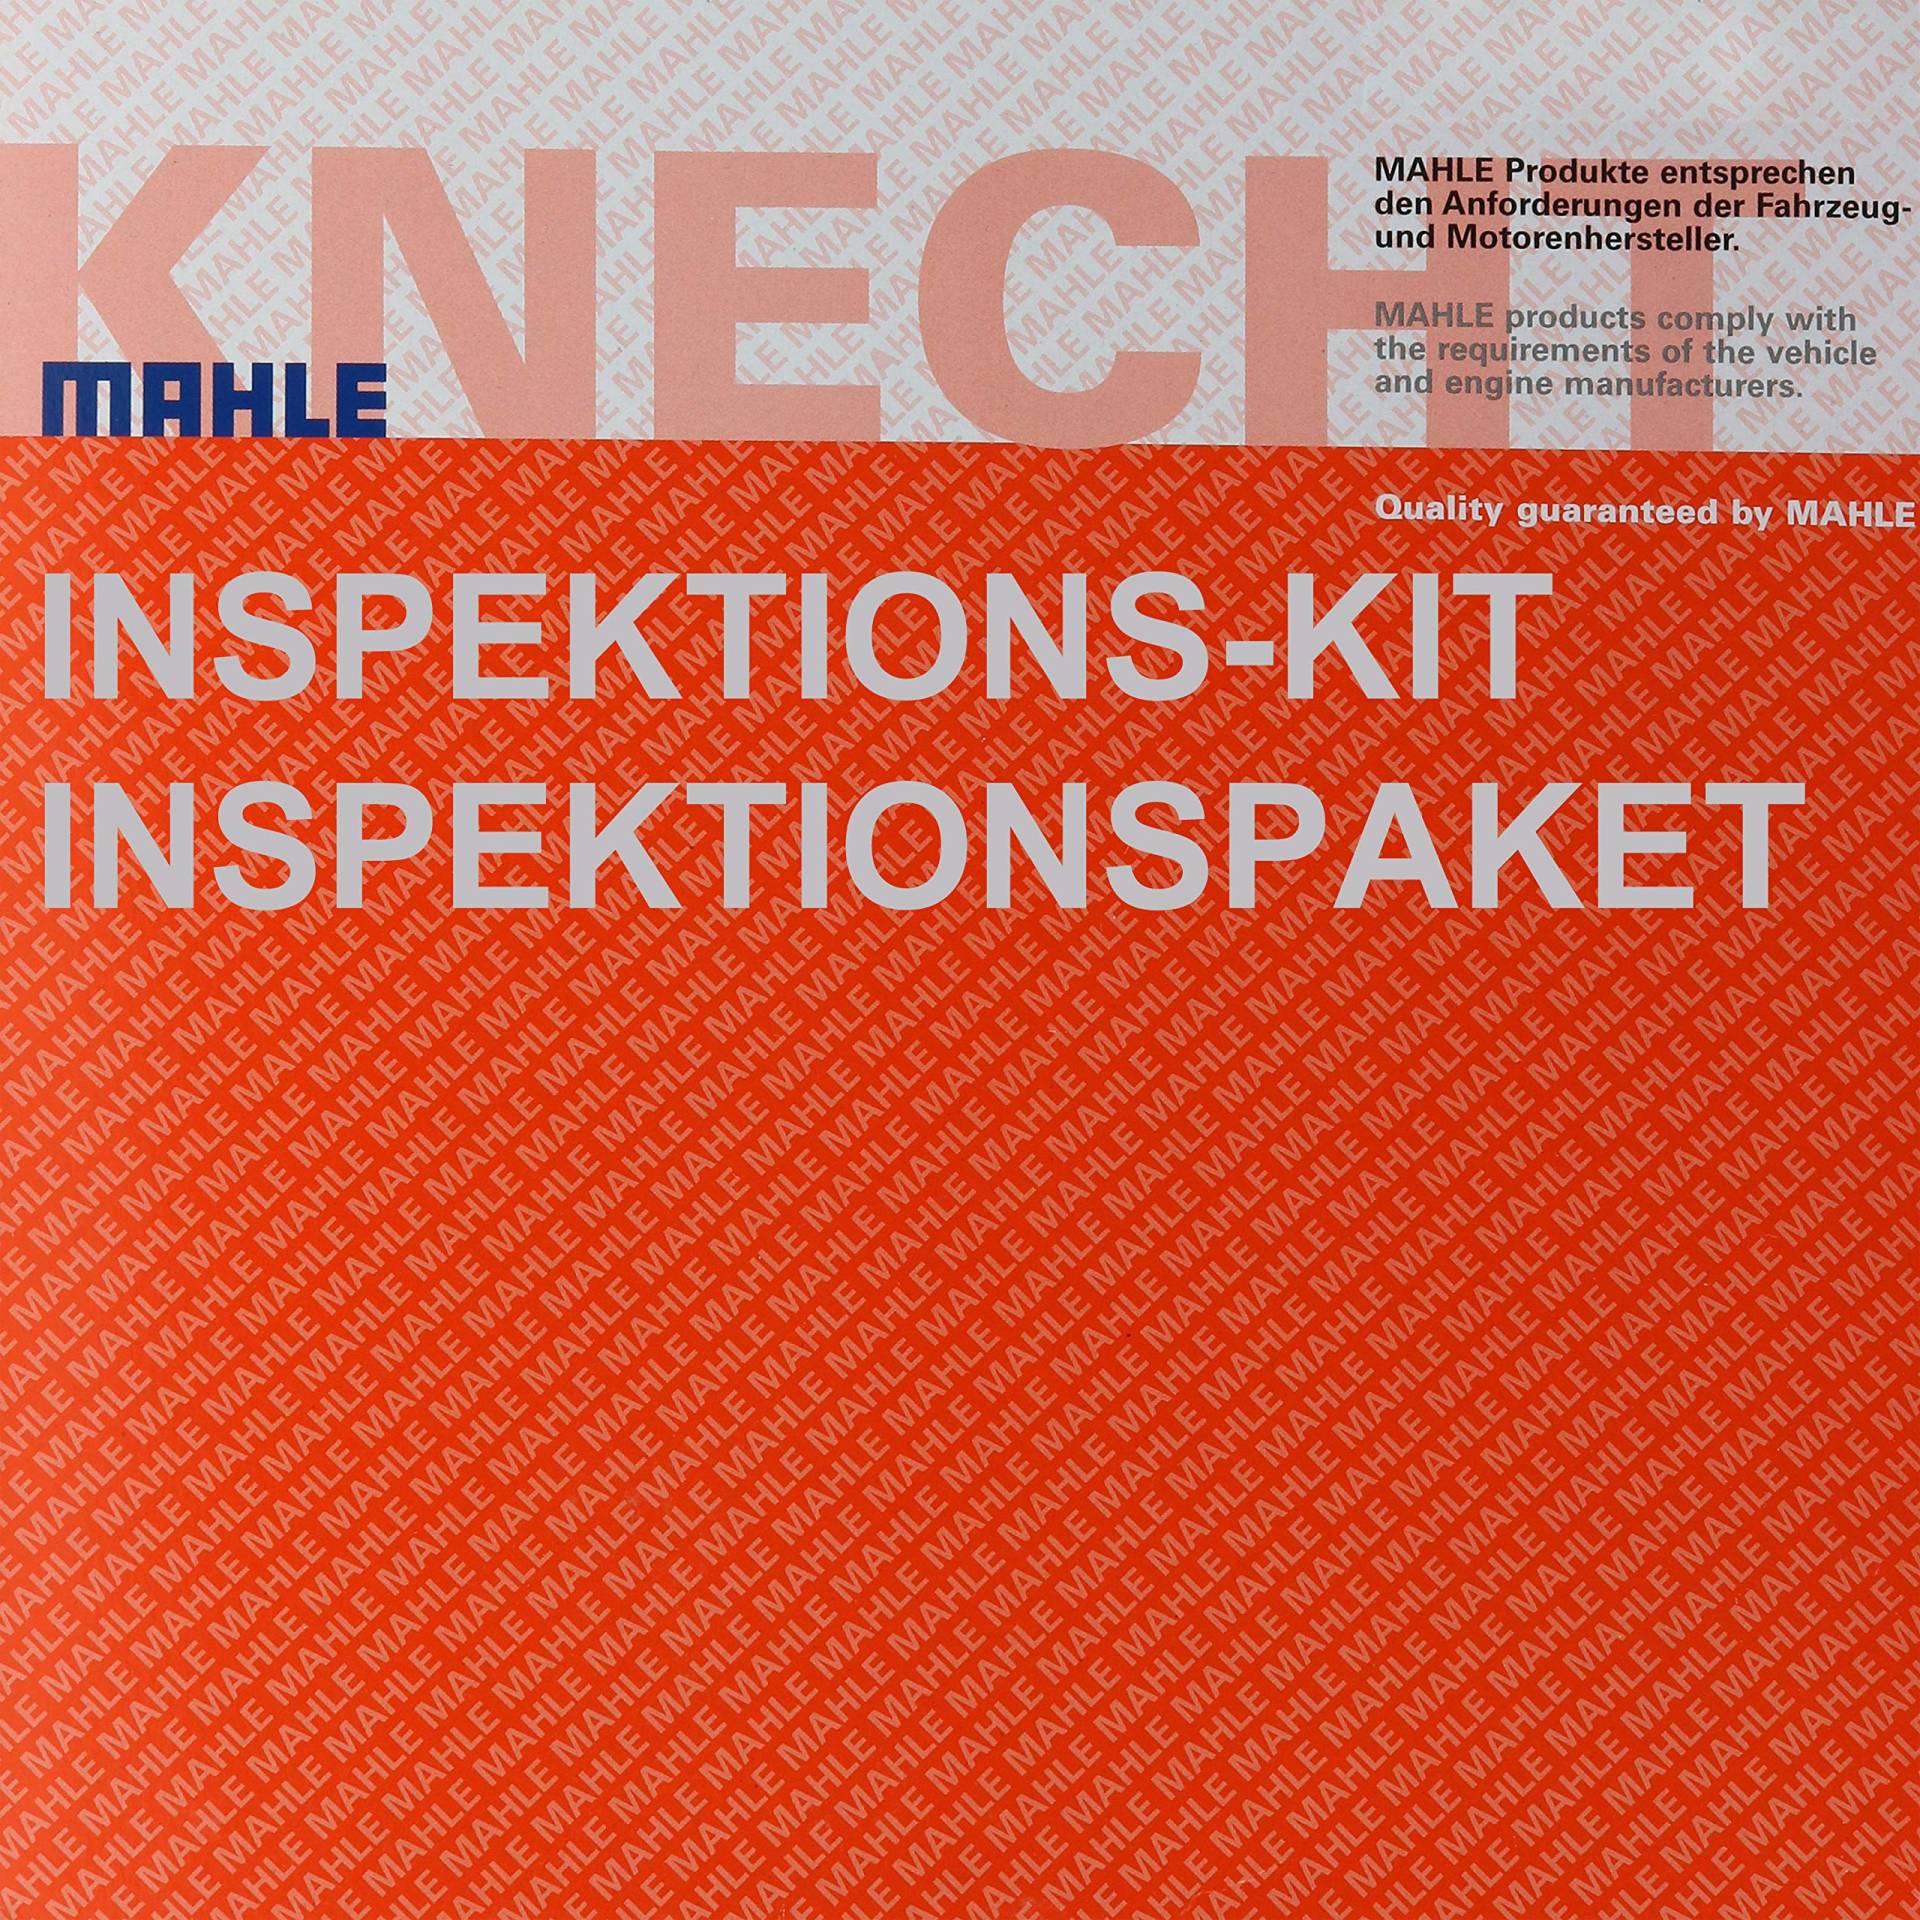 MAHLE Inspektions Set Inspektionspaket Luftfilter Ölfilter von Diederichs